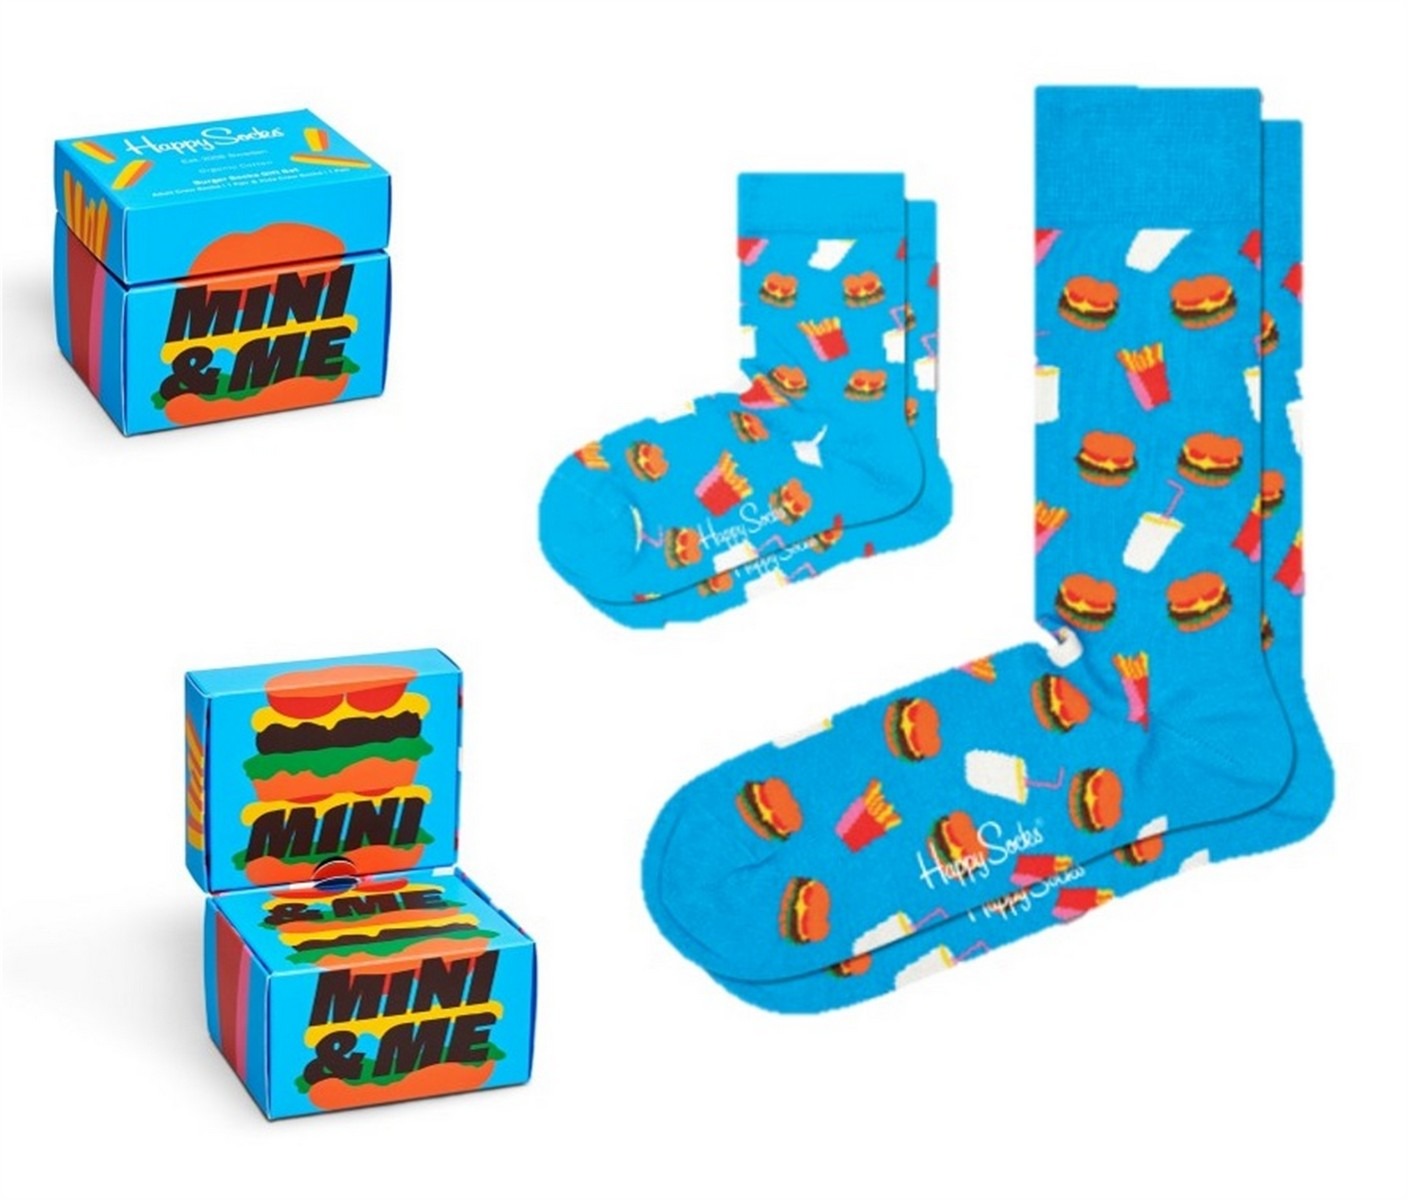 Staat galop Picasso Happy Socks - Burgers Soks Gift Set Mini Me maat 36-40 en 0-12 maanden  (XKMIM02-6000) - Kids - Blije voeten met Happy Socks